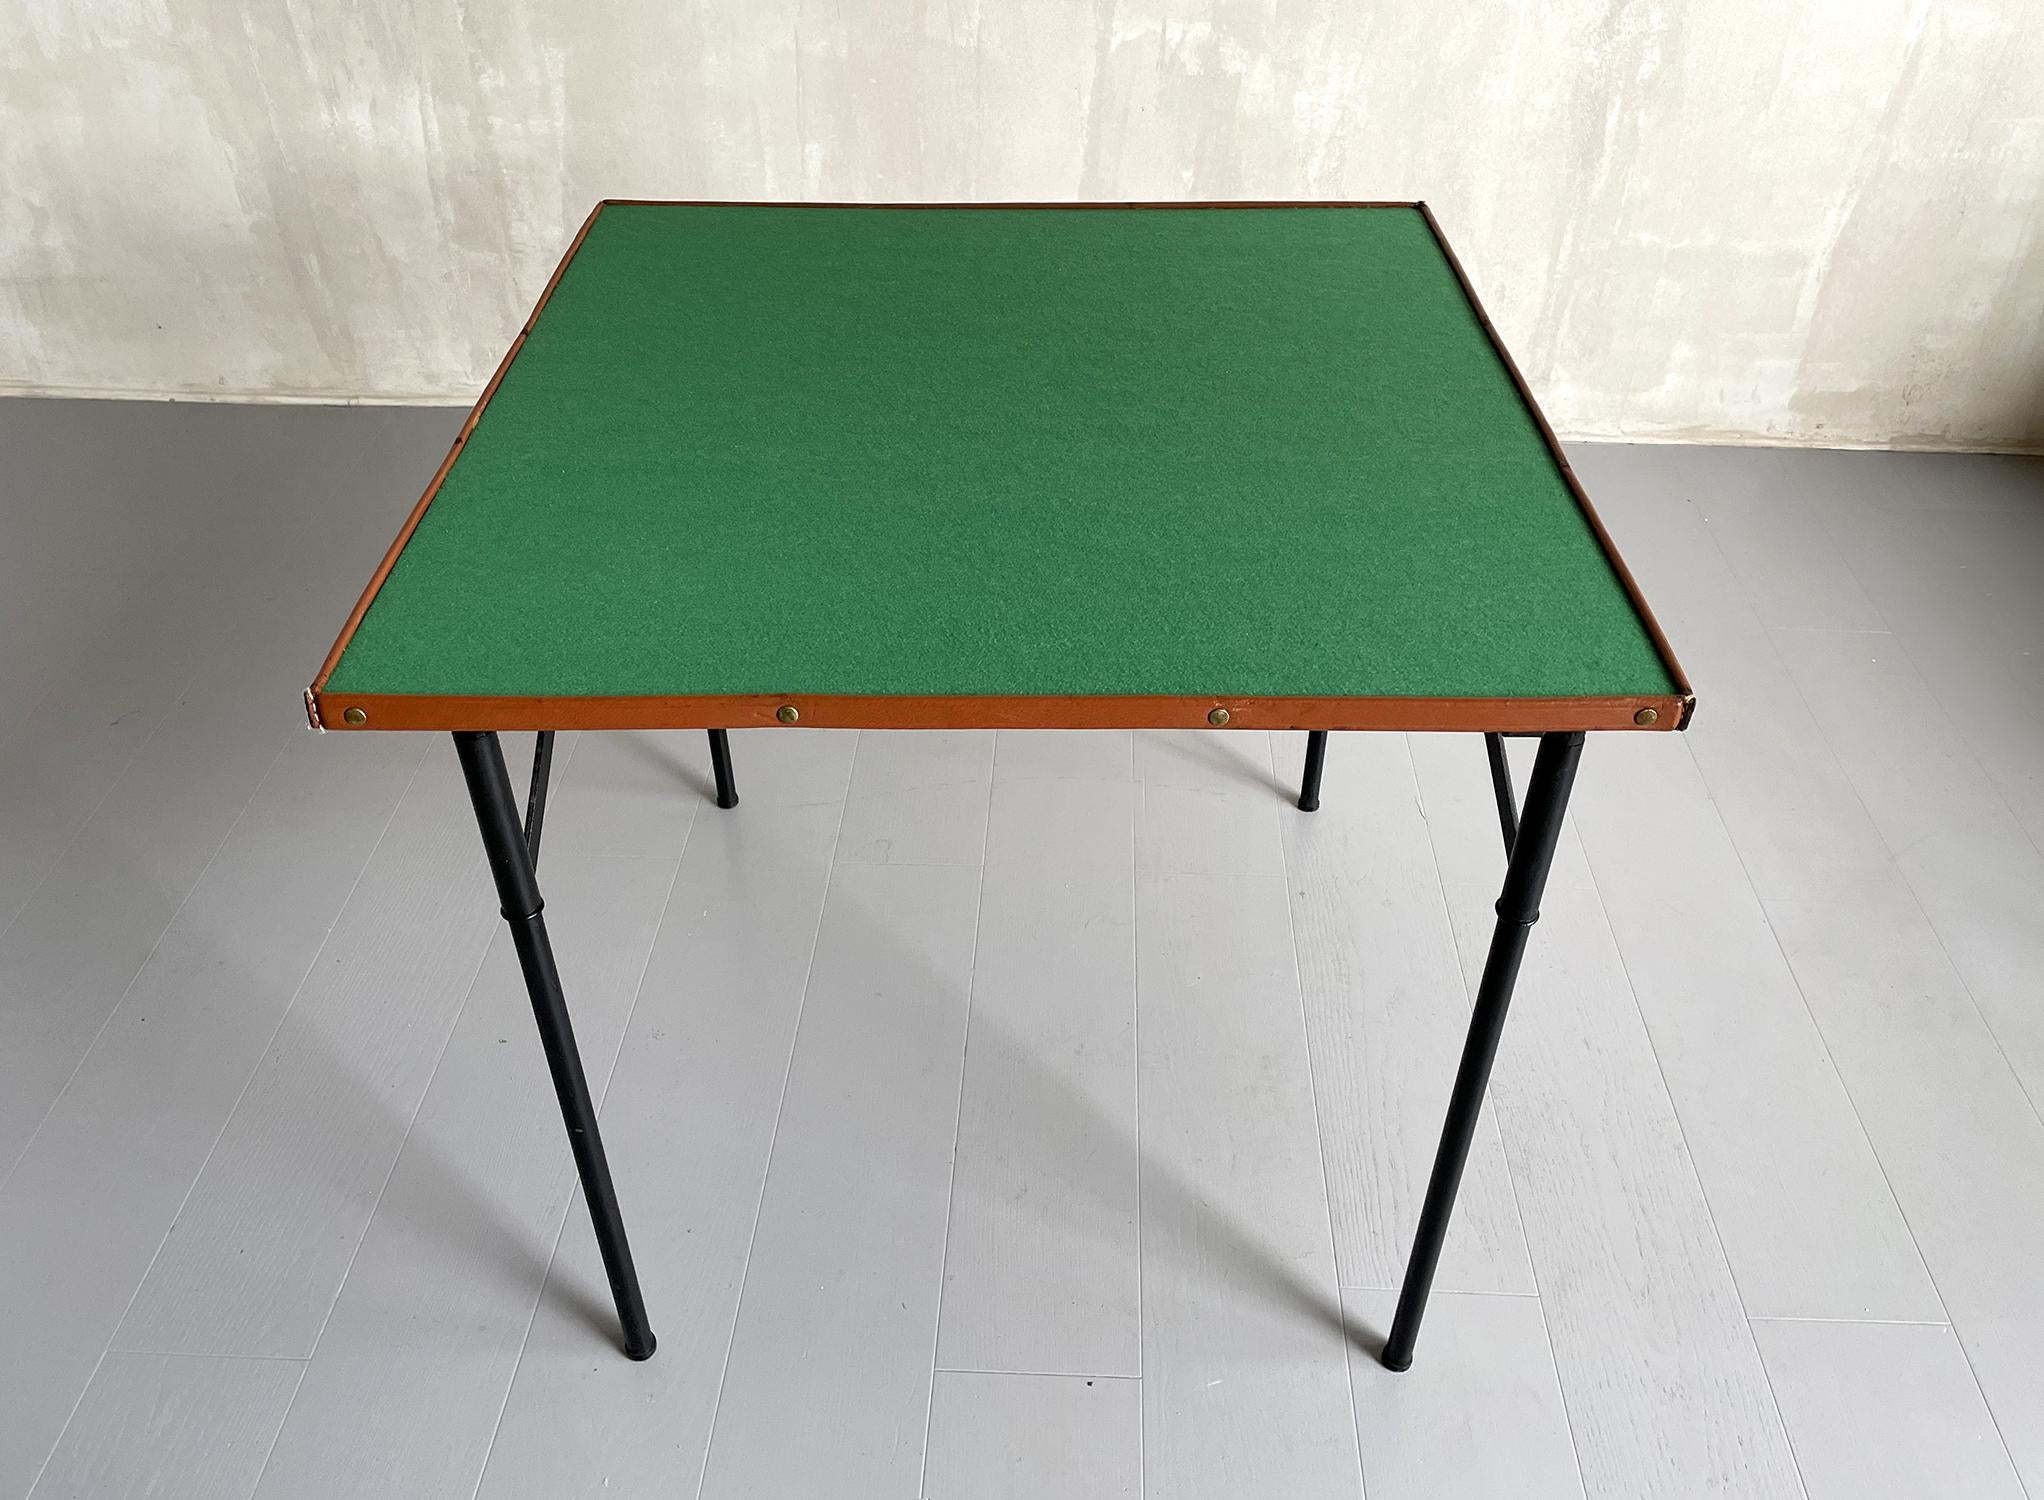 Jacques Adnet, klappbarer Spieltisch aus lackiertem Metall, Messing und genähtem Leder, Frankreich 1950. Das Oberteil ist mit grünem Filz gefüttert und von einer genähten und genoppten Lederborte umgeben. Die vier Beine werden durch einen goldenen